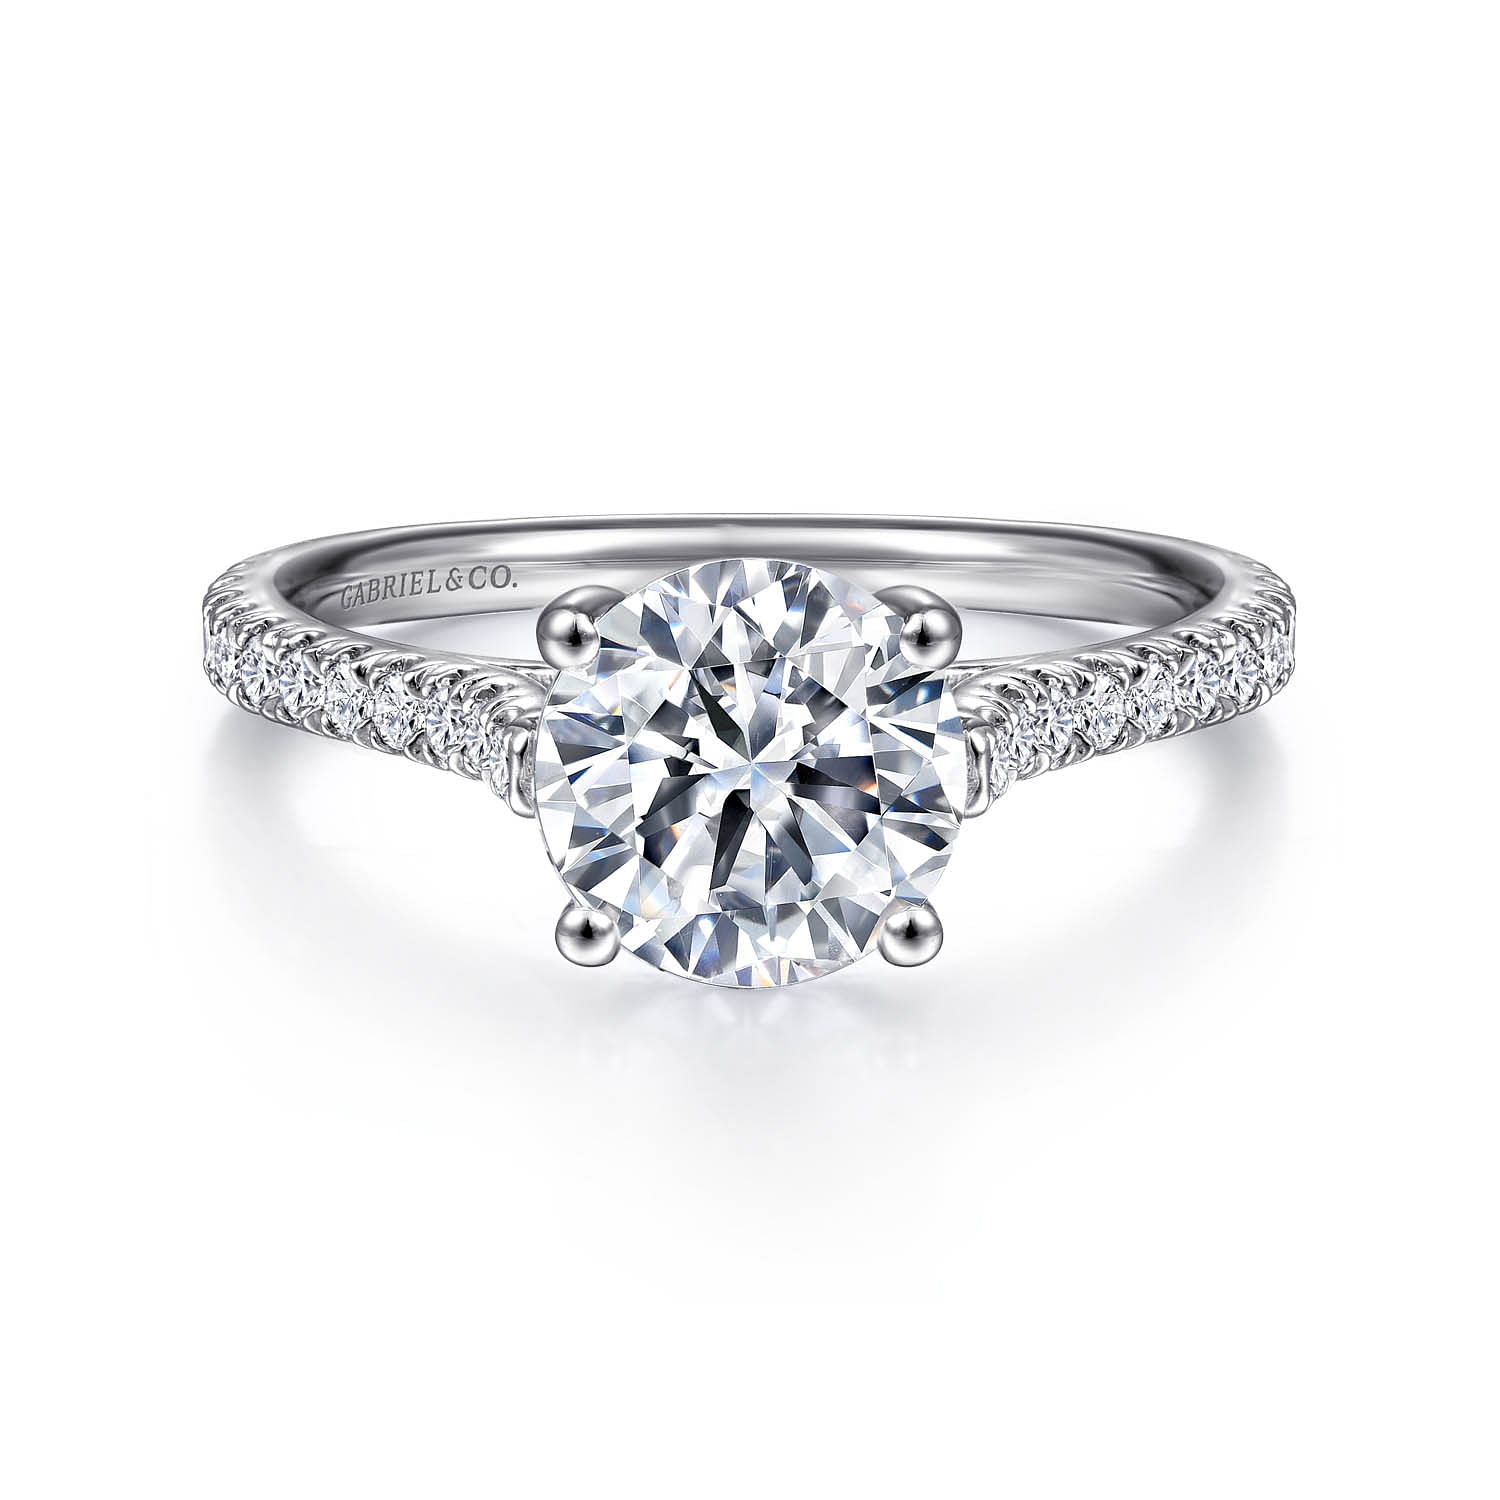 Josephine - 18K White Gold Round Diamond Engagement Ring